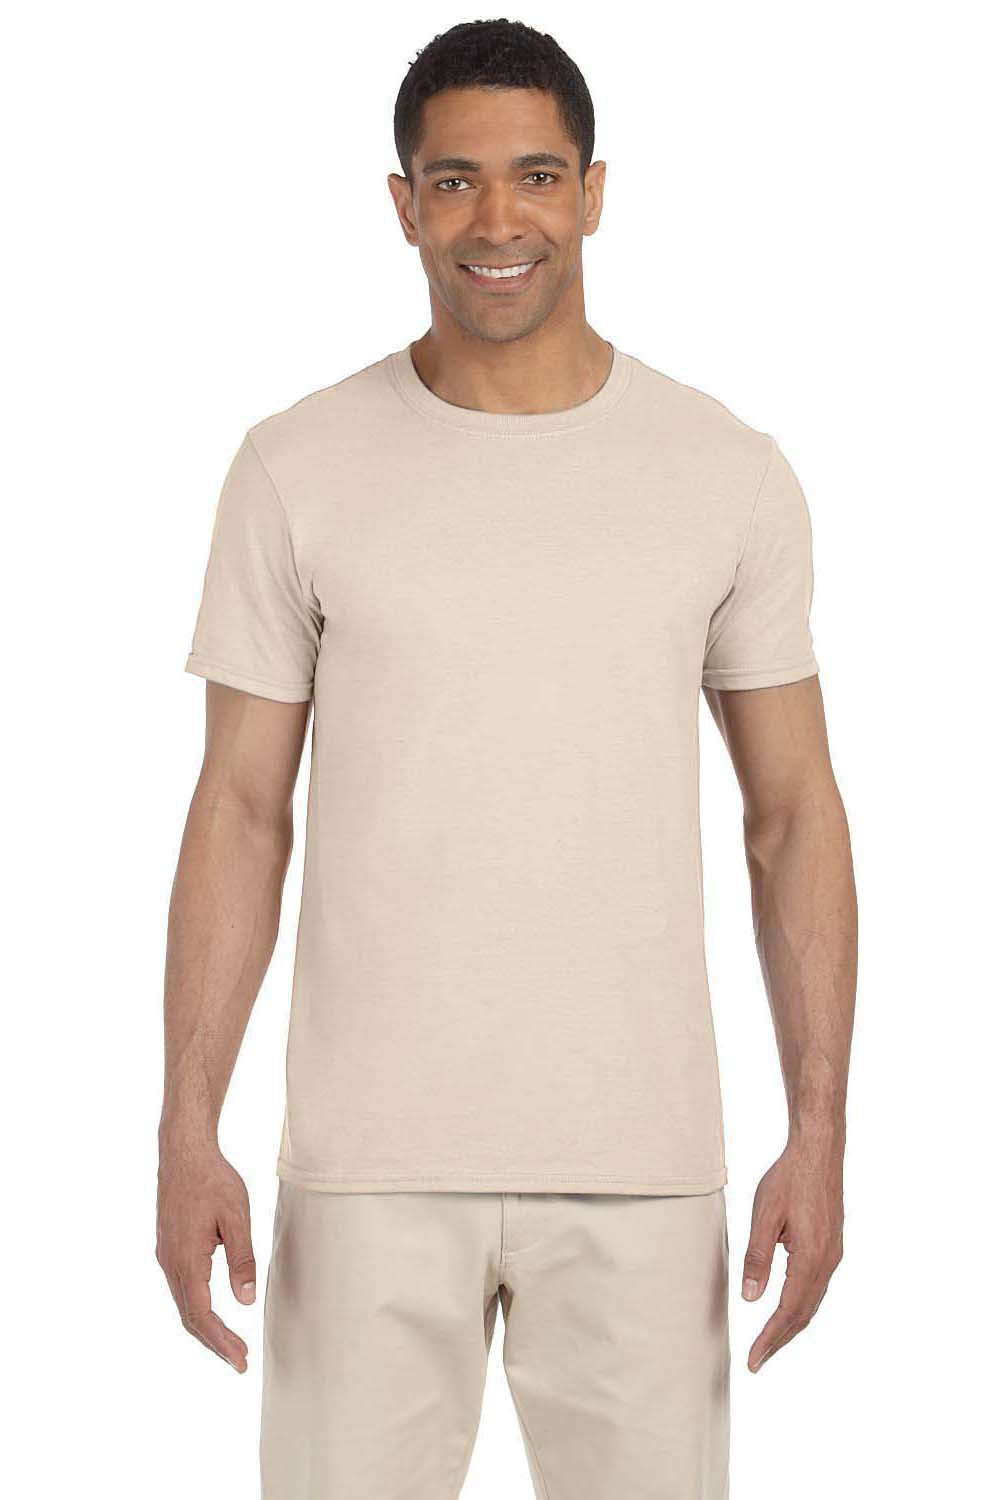 Gildan G640 Mens Softstyle Short Sleeve Crewneck T-Shirt Natural Front